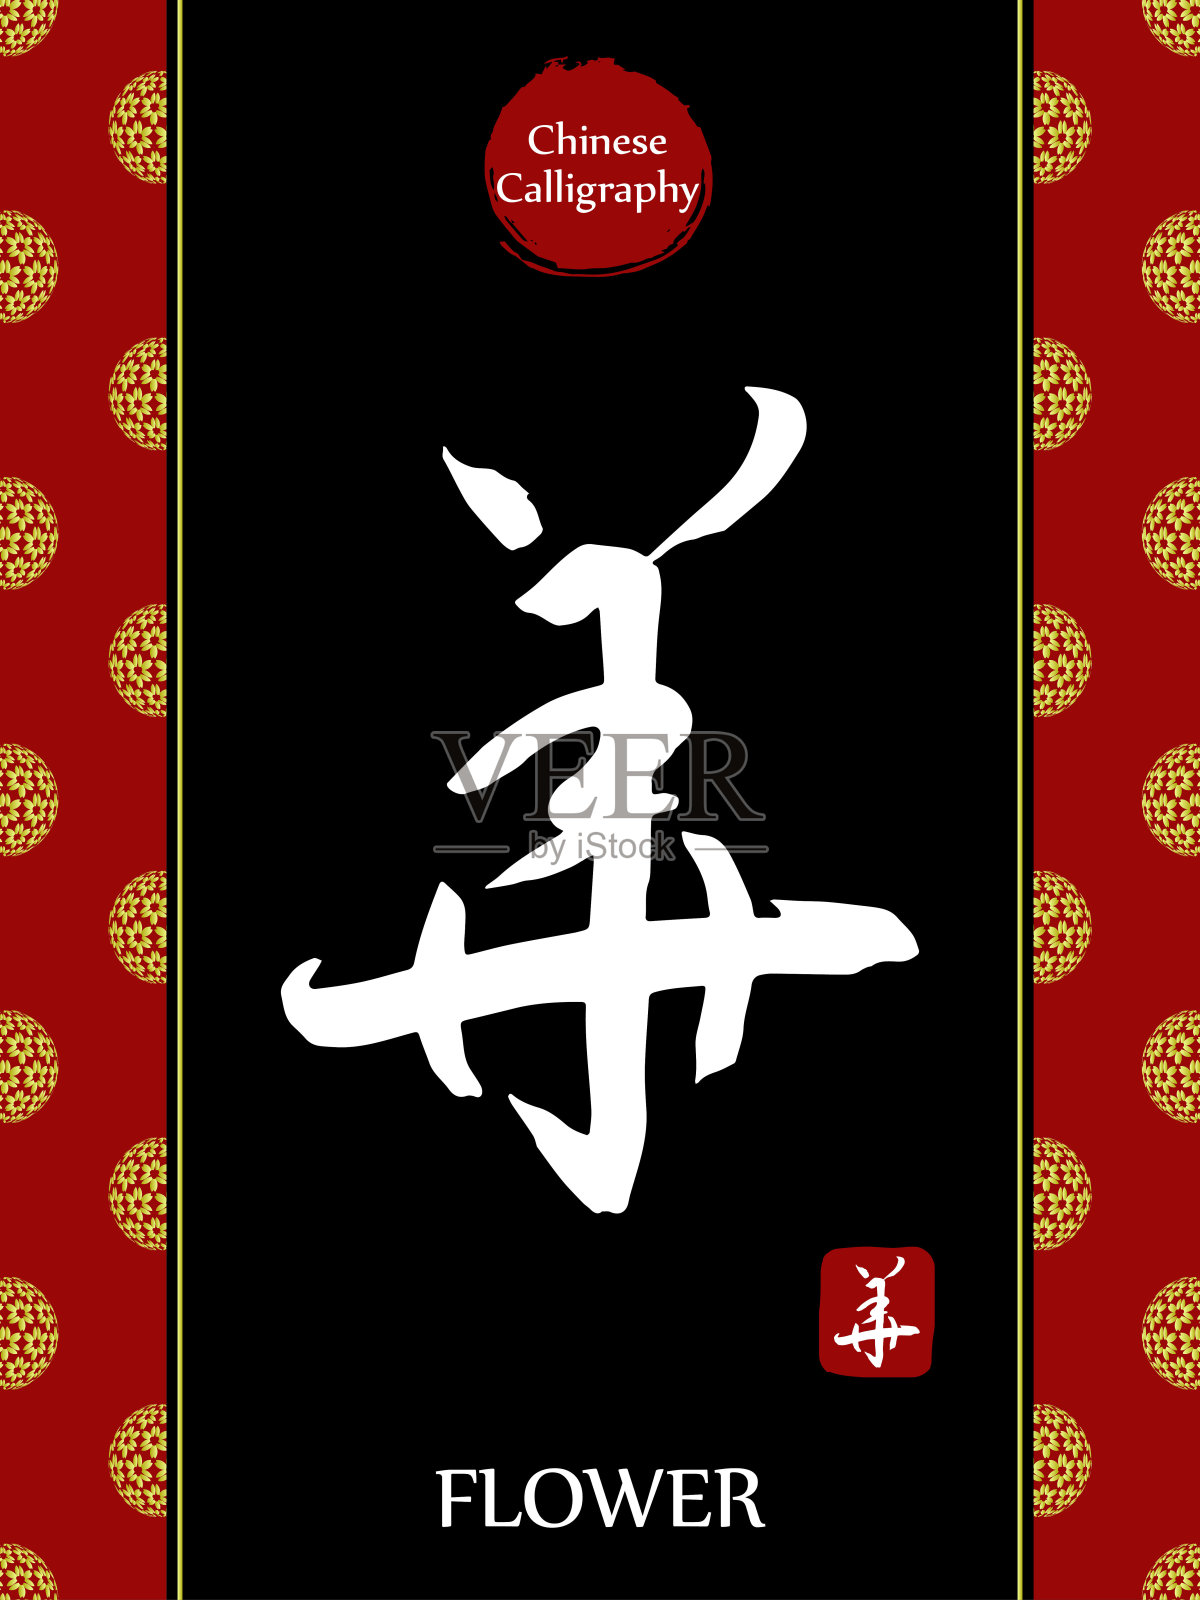 中国书法象形文字的翻译:花。亚洲金花球农历新年图案。向量中国符号在黑色背景。手绘图画文字。毛笔书法插画图片素材